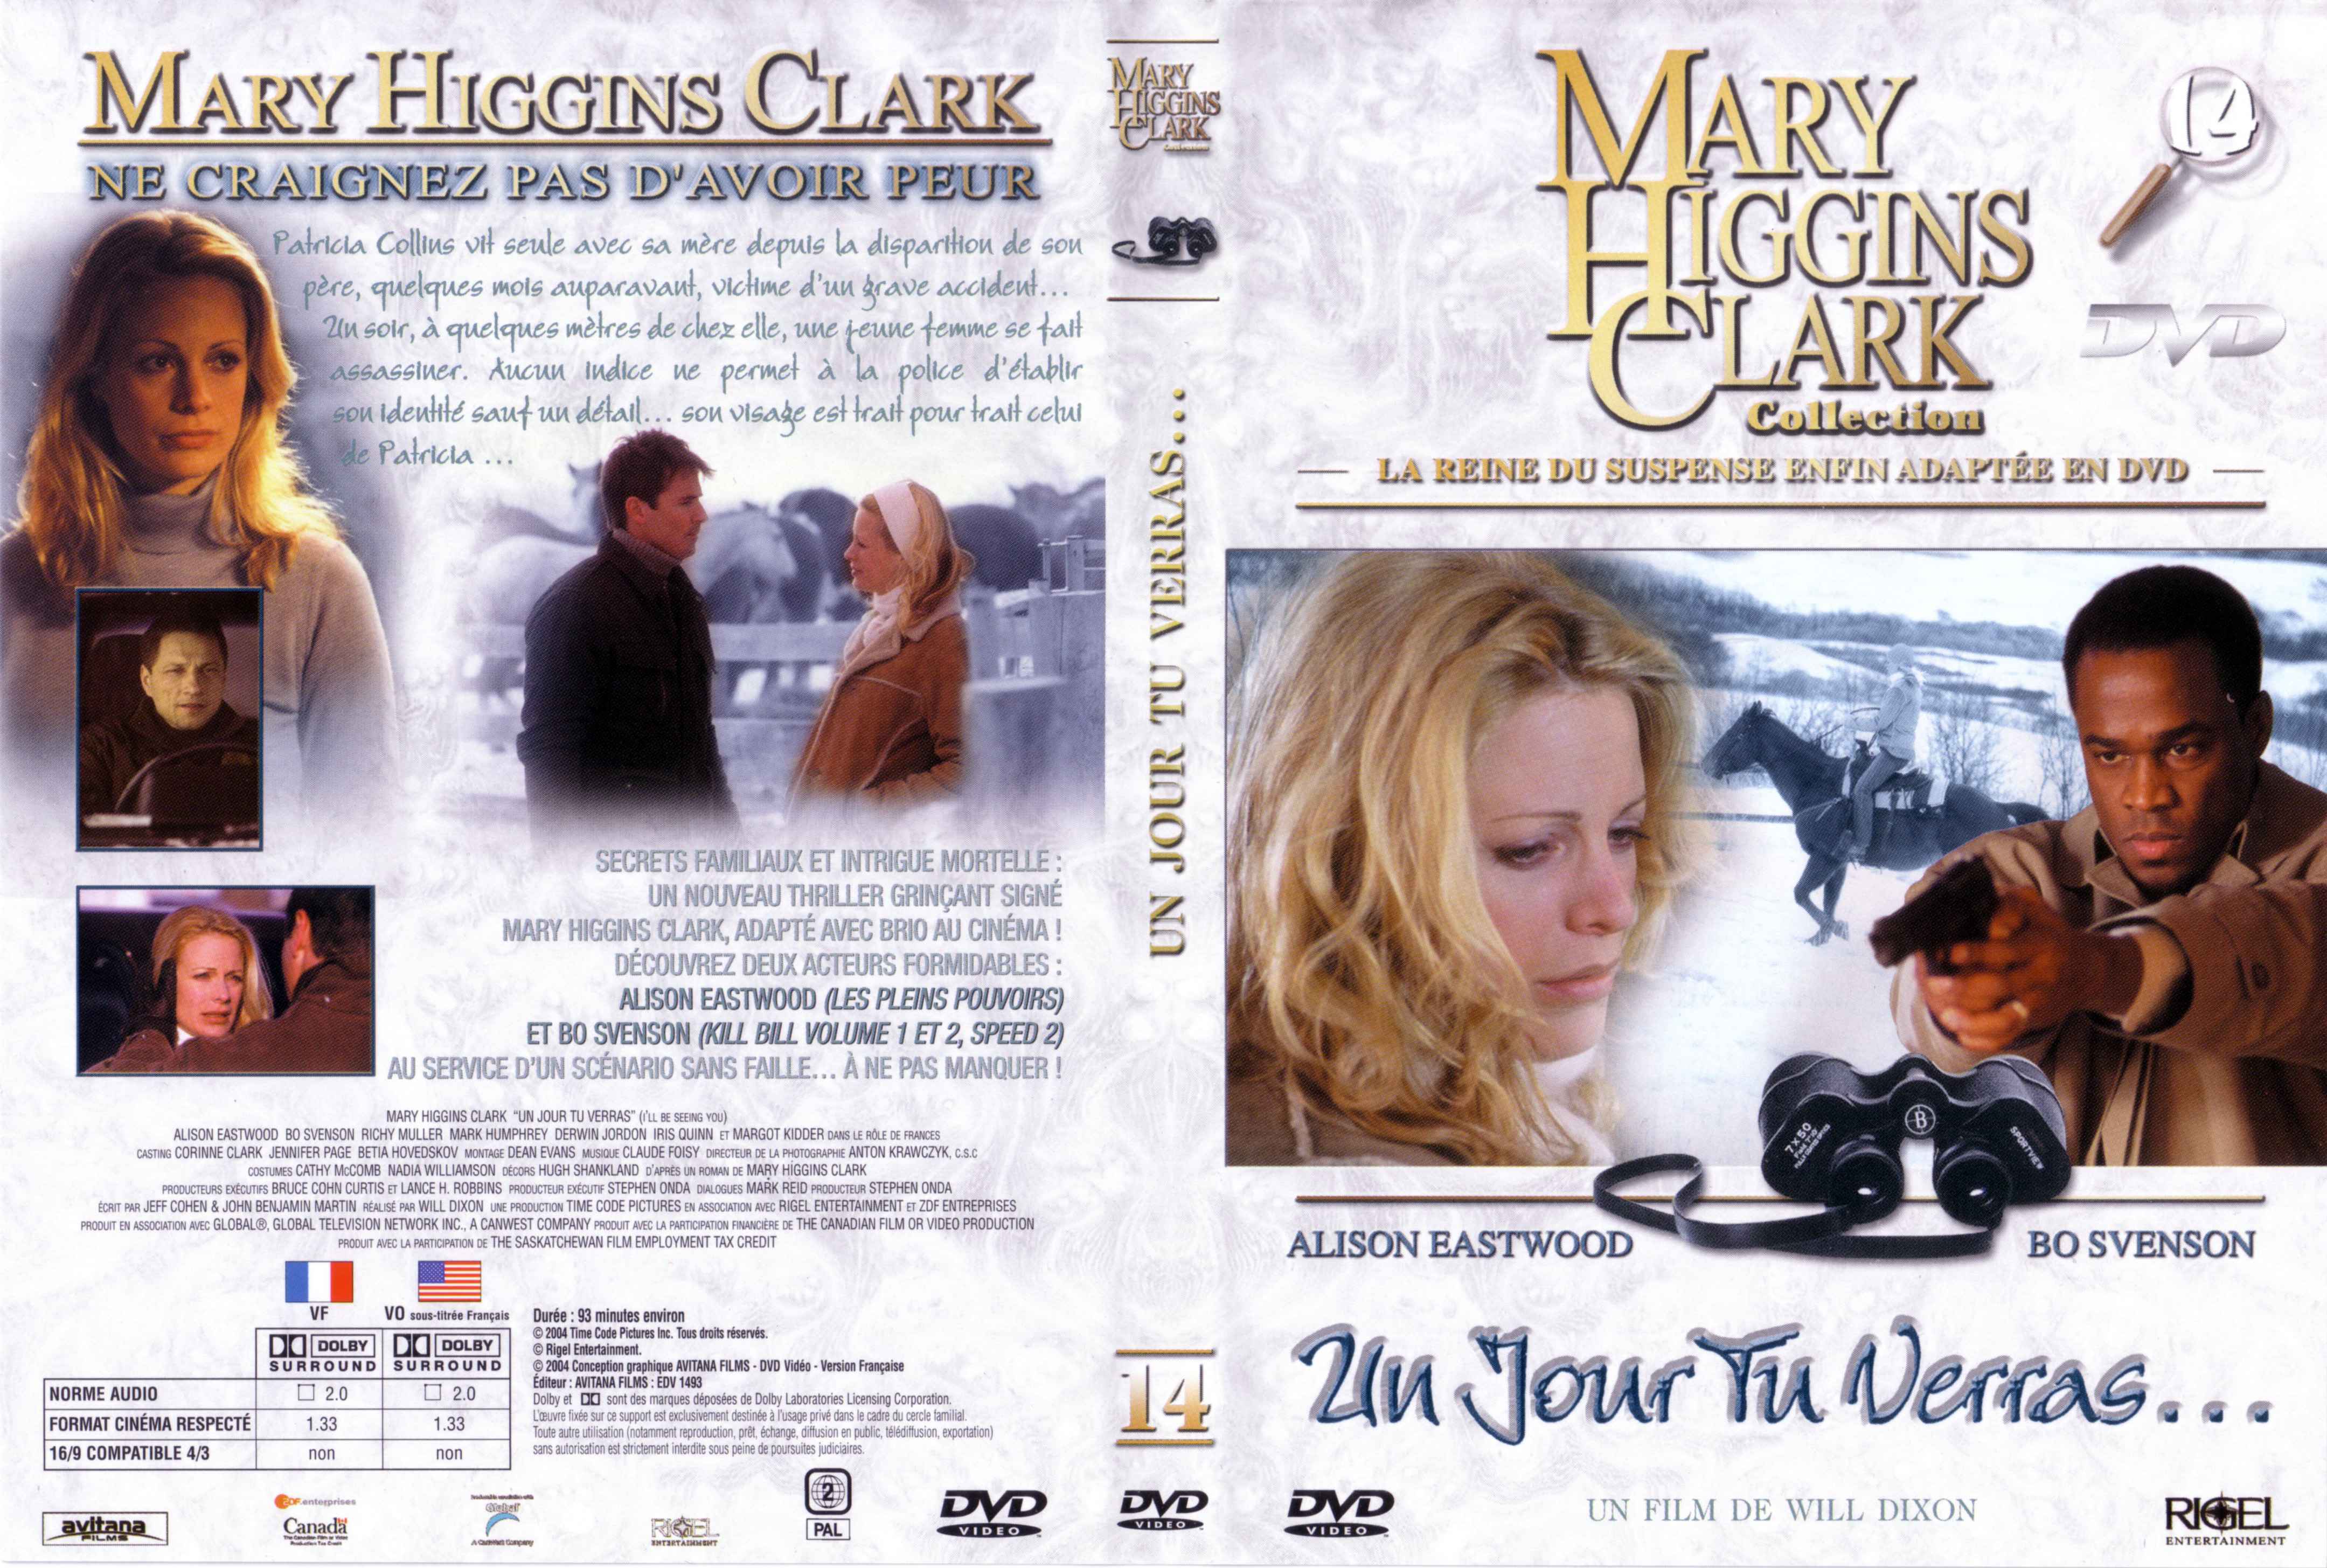 Jaquette DVD de Mary Higgins Clark vol 14 - Un jour tu verras - Cinéma Passion4319 x 2910